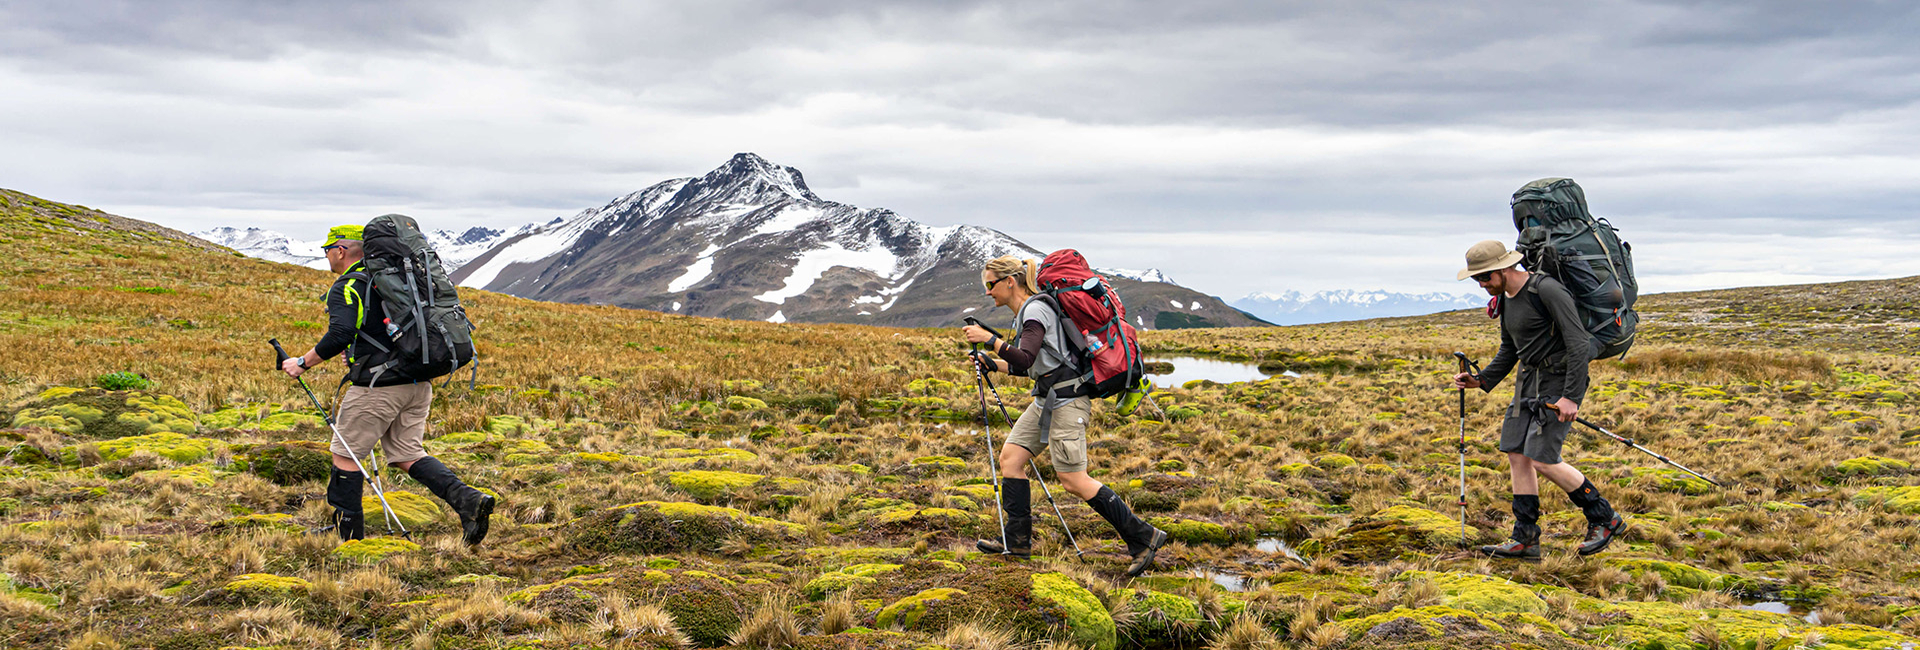 Dientes de Navarino Trek | Tierra del Fuego